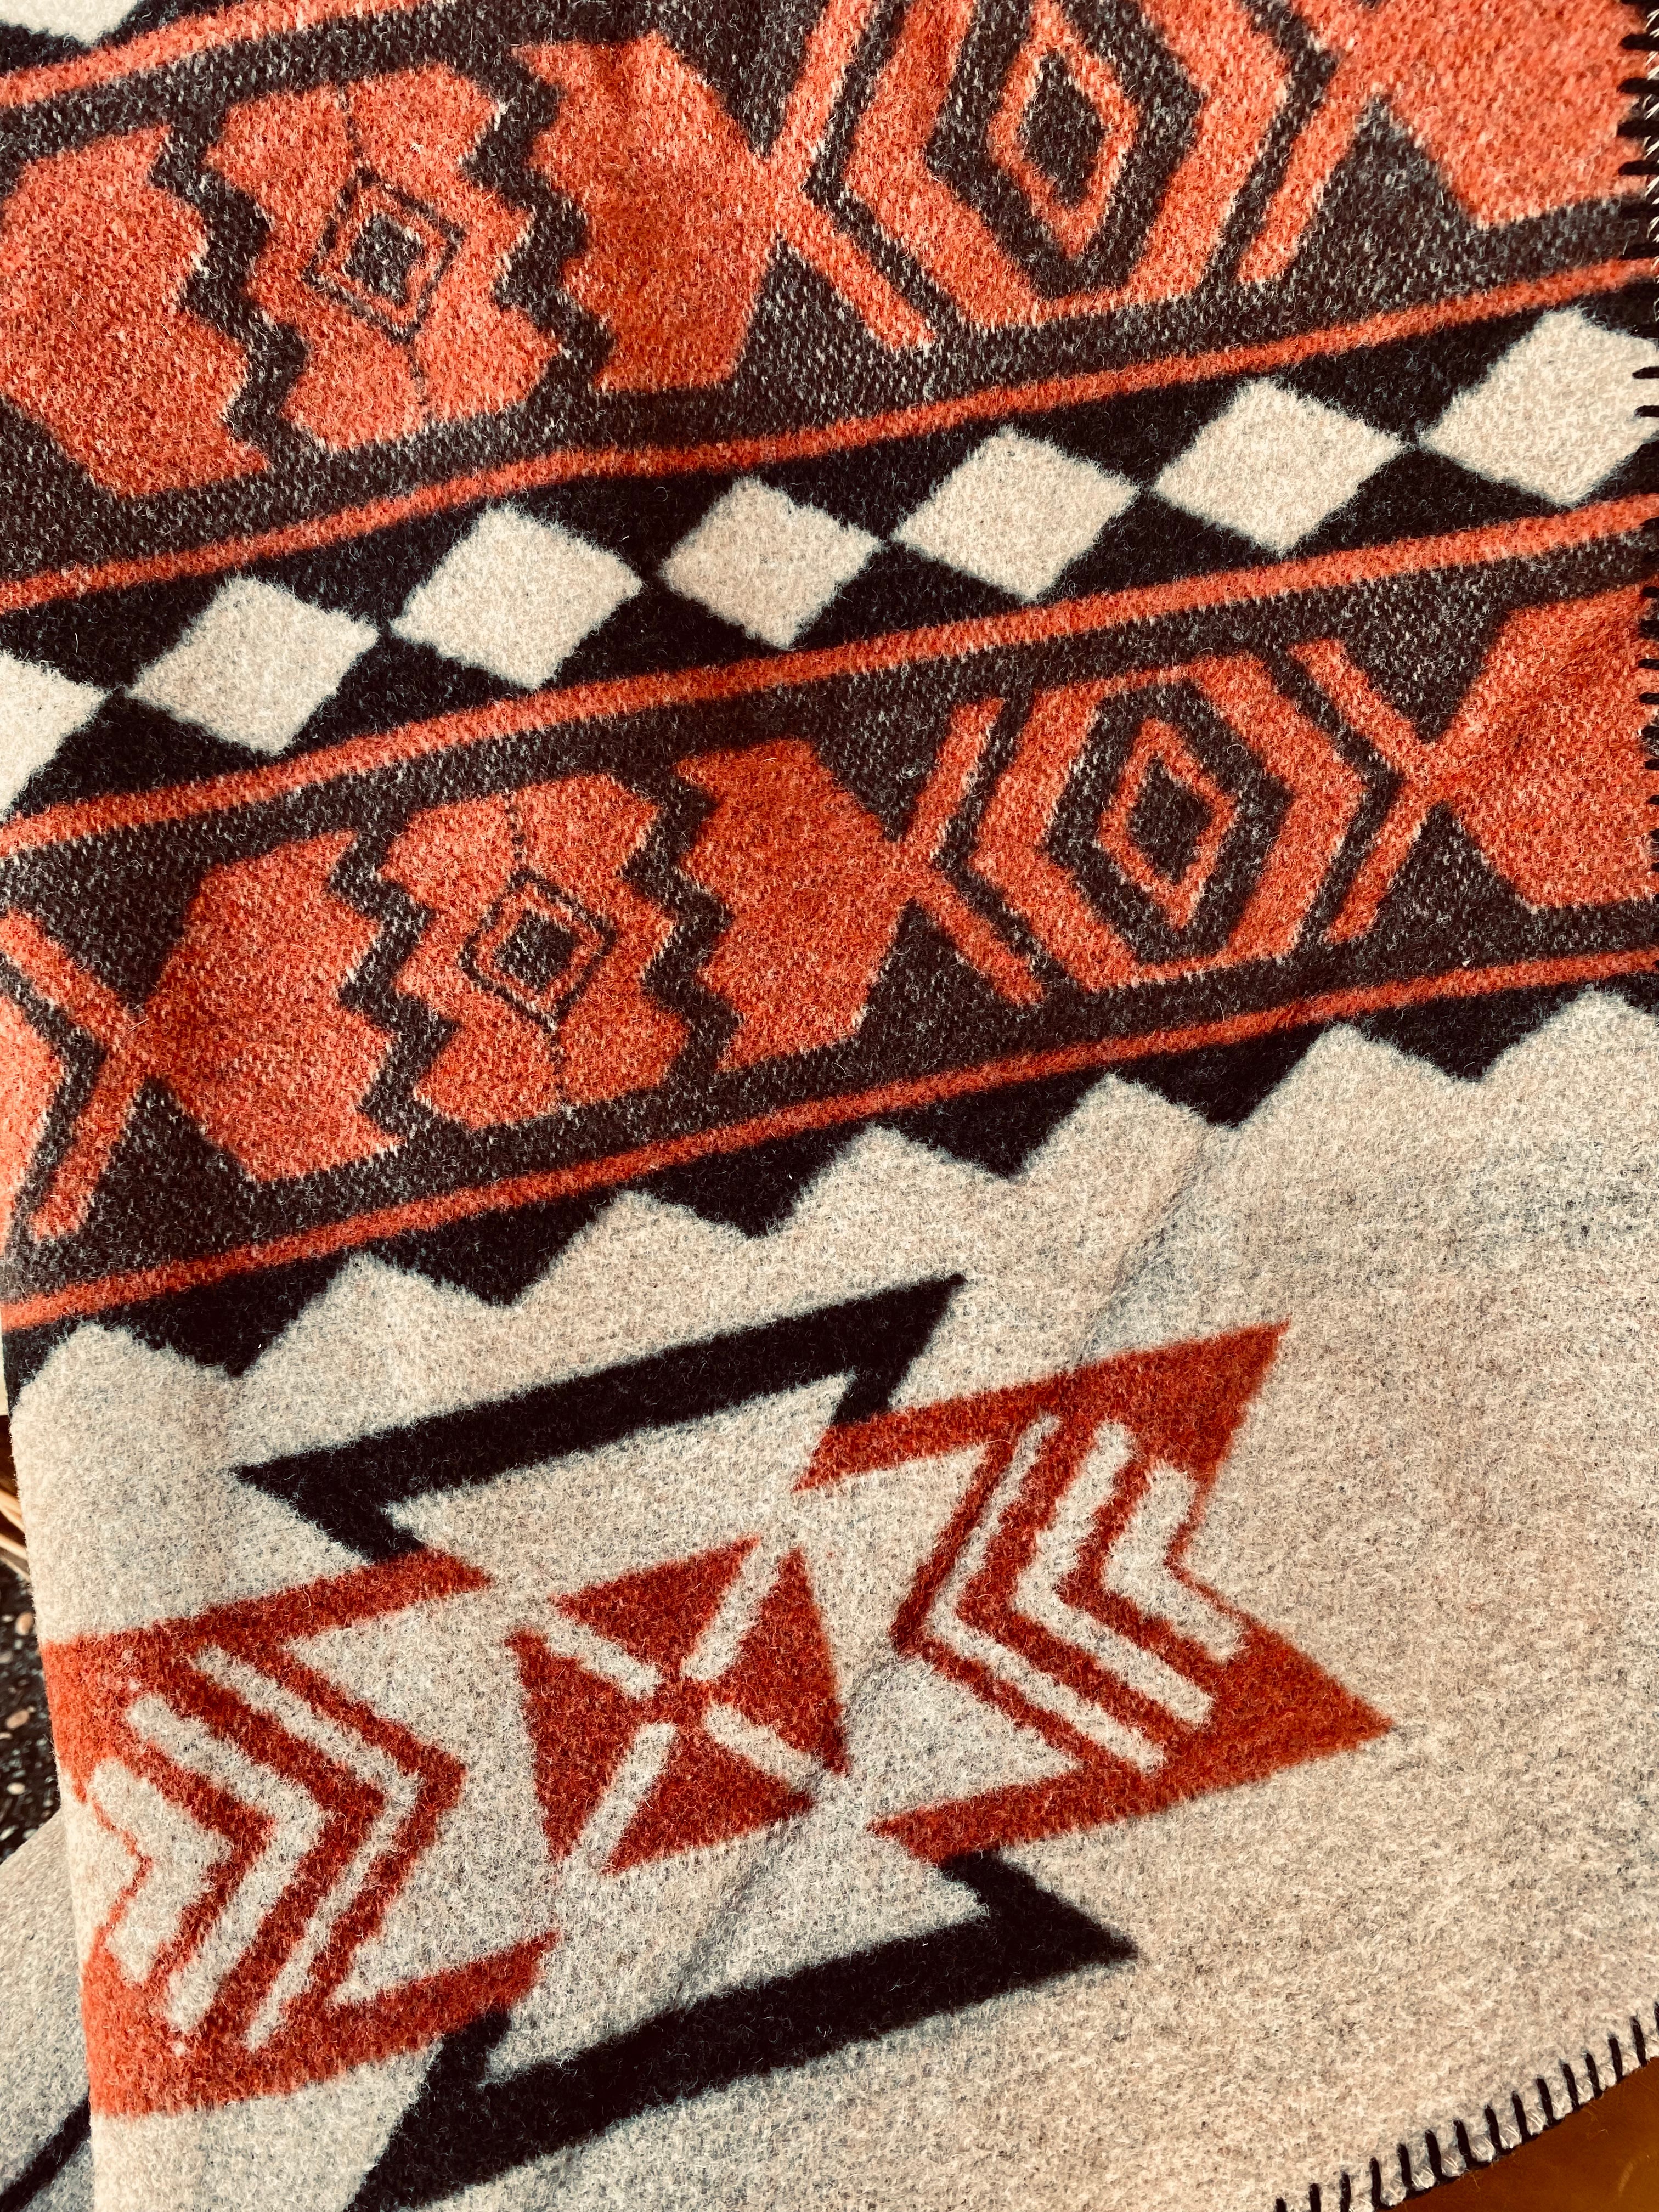 The Spice Chippewa Blanket